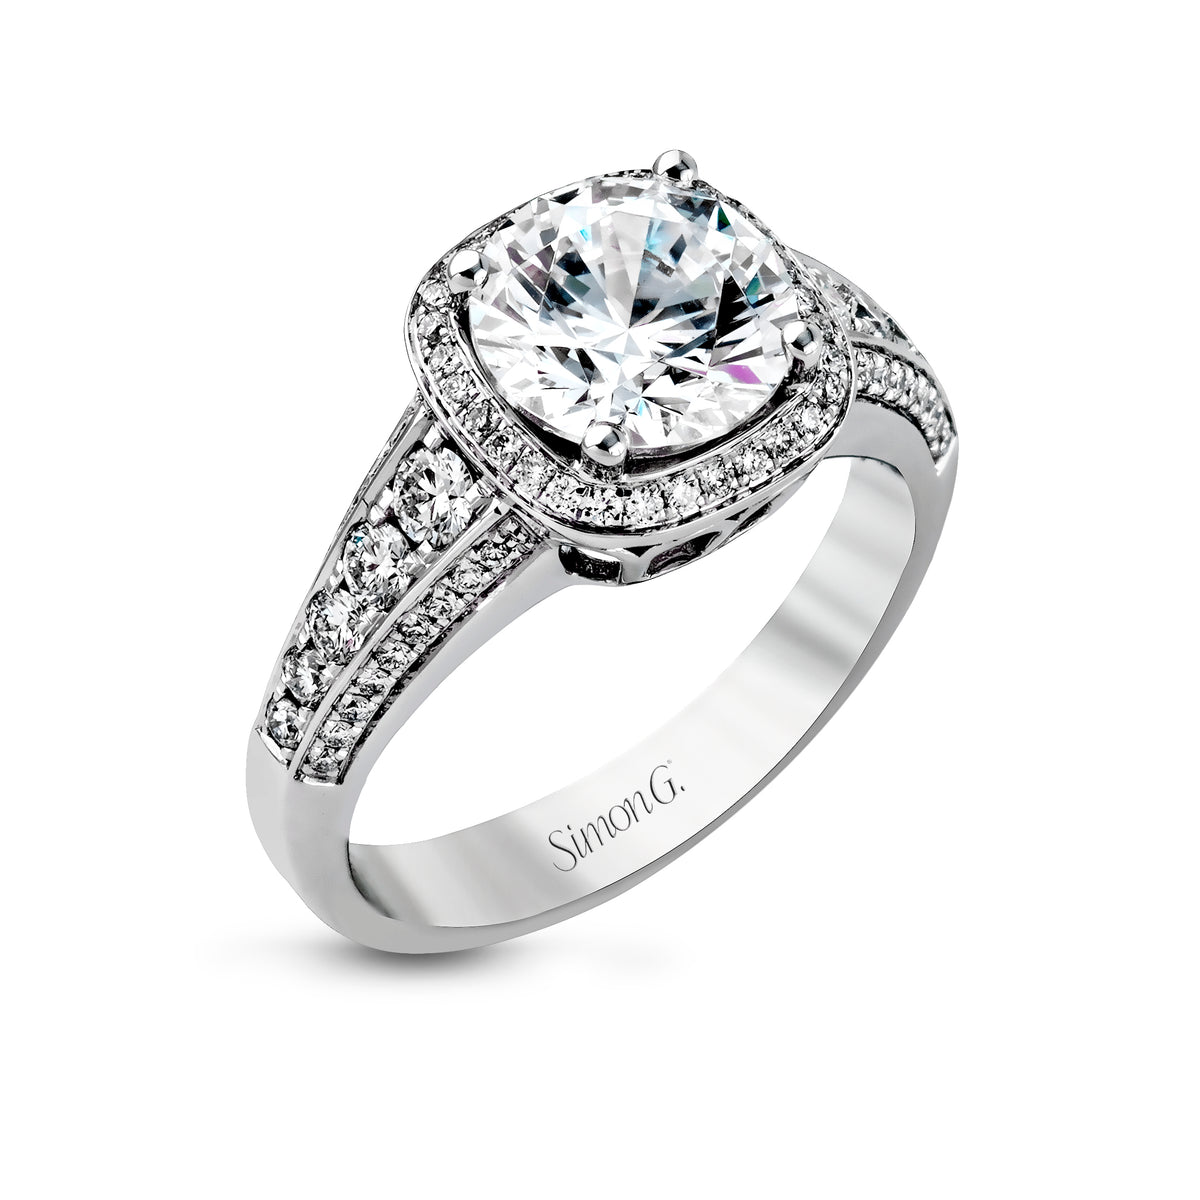 Simon G 18K White Gold Diamond Engagement Ring